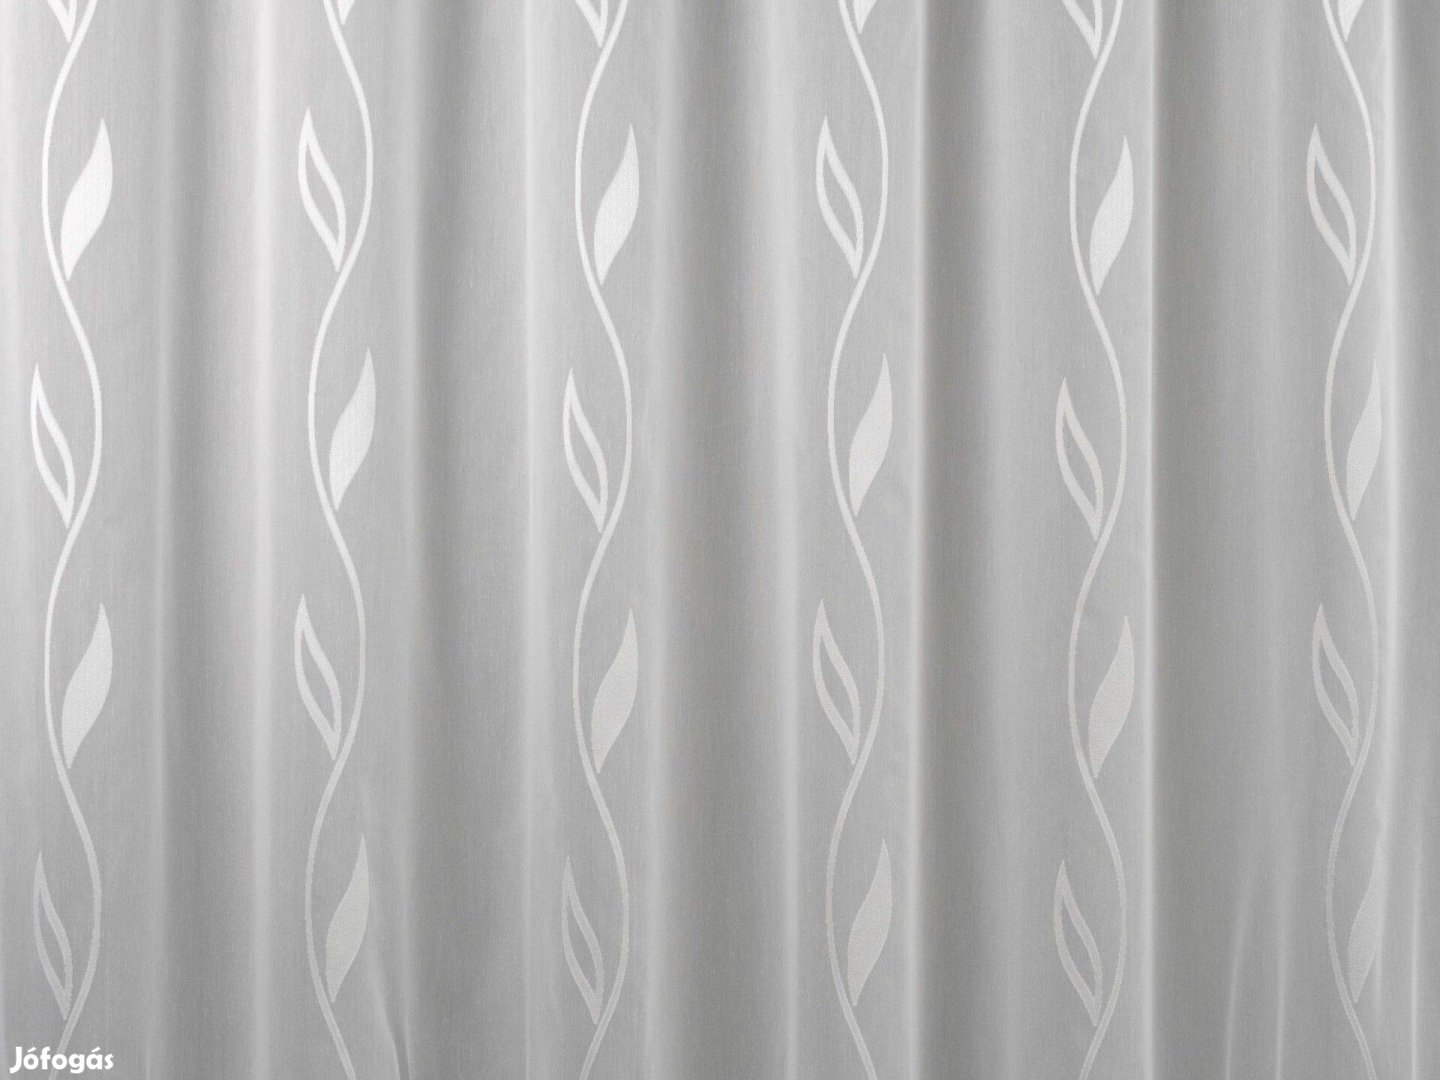 Új hófehér hullám mintás függöny (4,7m x 180 cm)